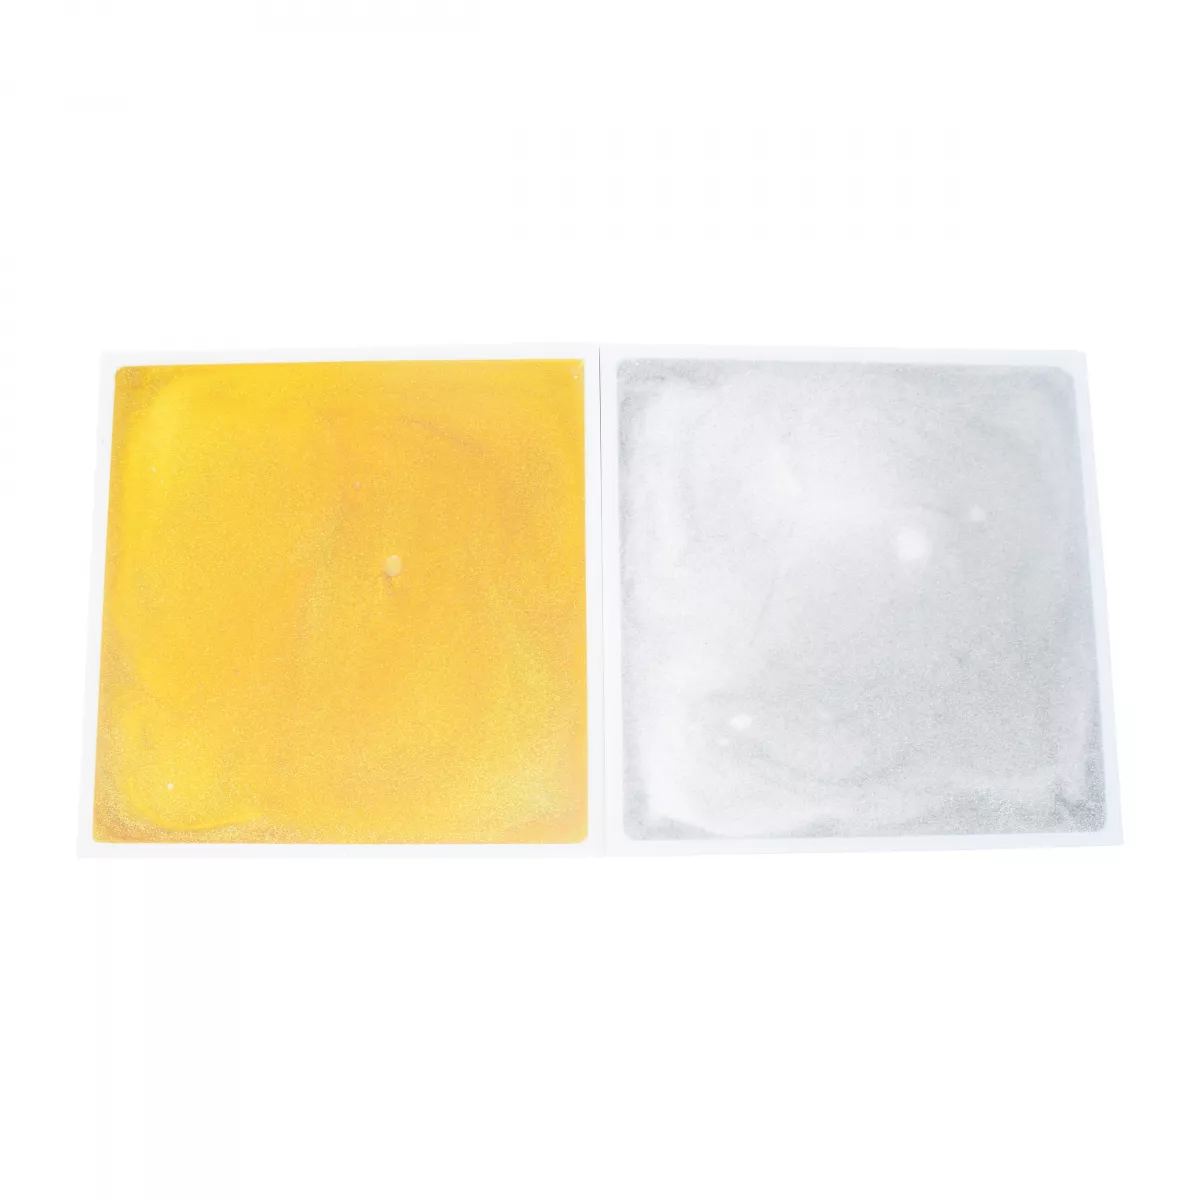 Placă de podea cu lichid senzorial strălucitor: Auriu